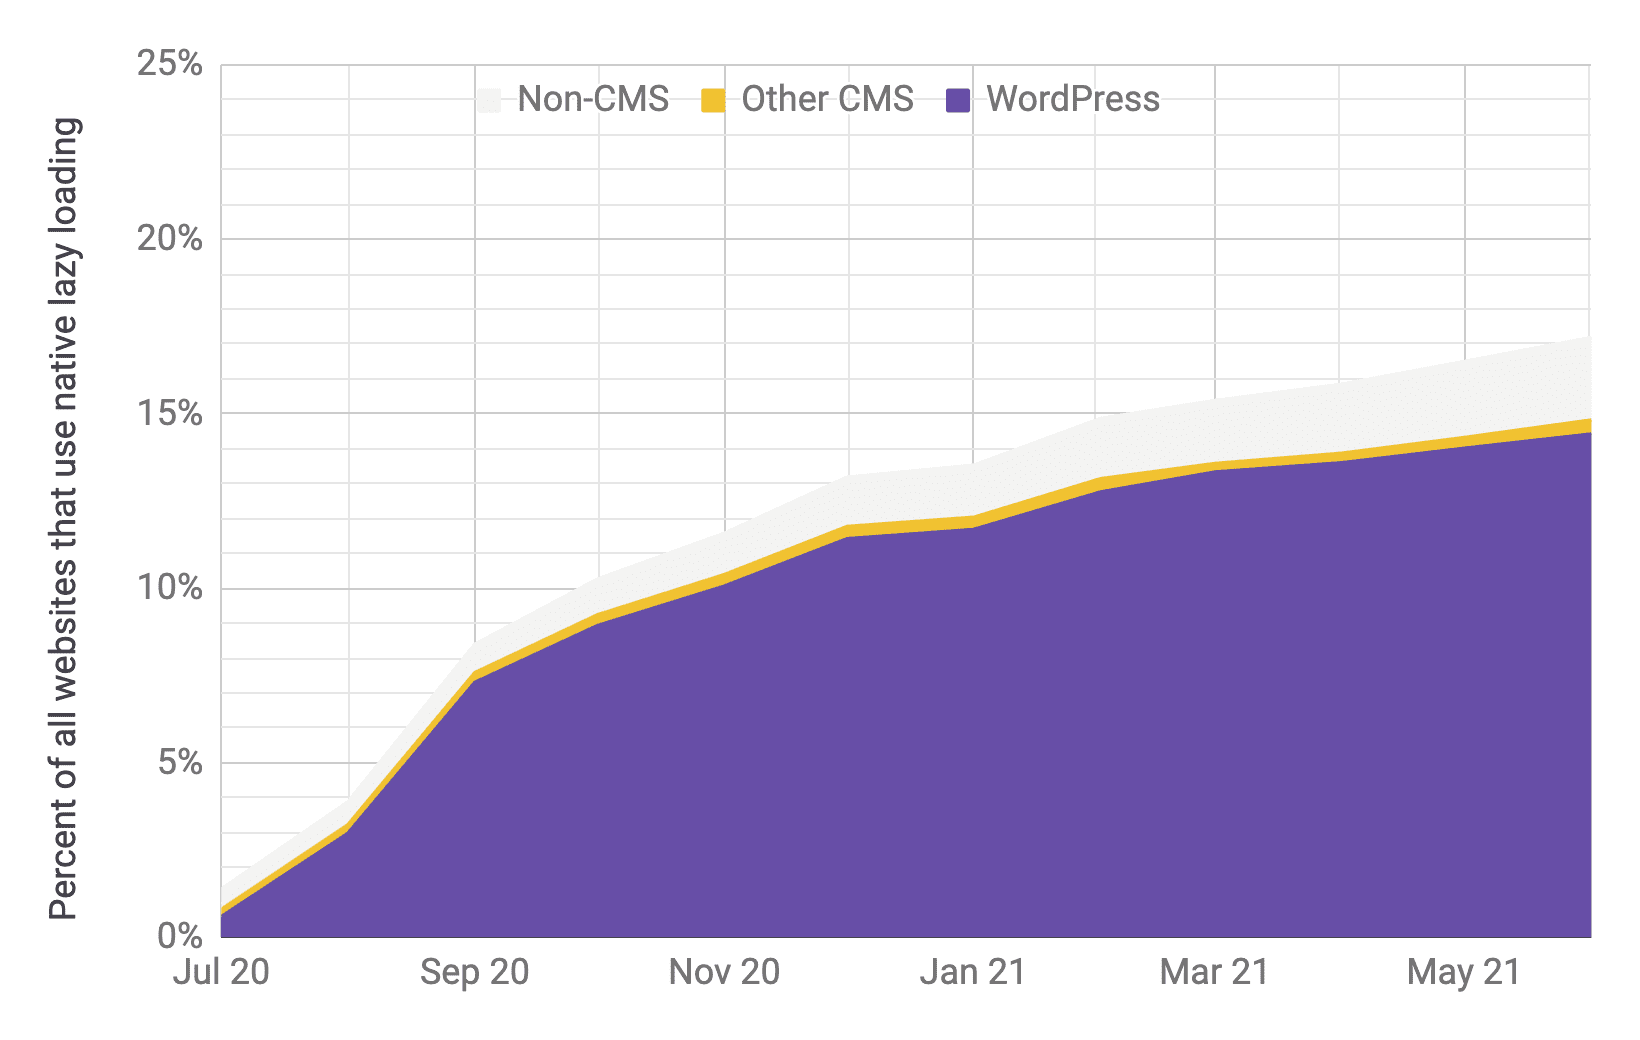 Gráfico de serie temporal que muestra la adopción de la carga diferida, en el que WordPress es el factor predominante en comparación con otros CMS y no CMS, con proporciones similares a las del gráfico anterior. Se demostró que la adopción total aumentó rápidamente del 1% al 17% entre julio de 2020 y junio de 2021.